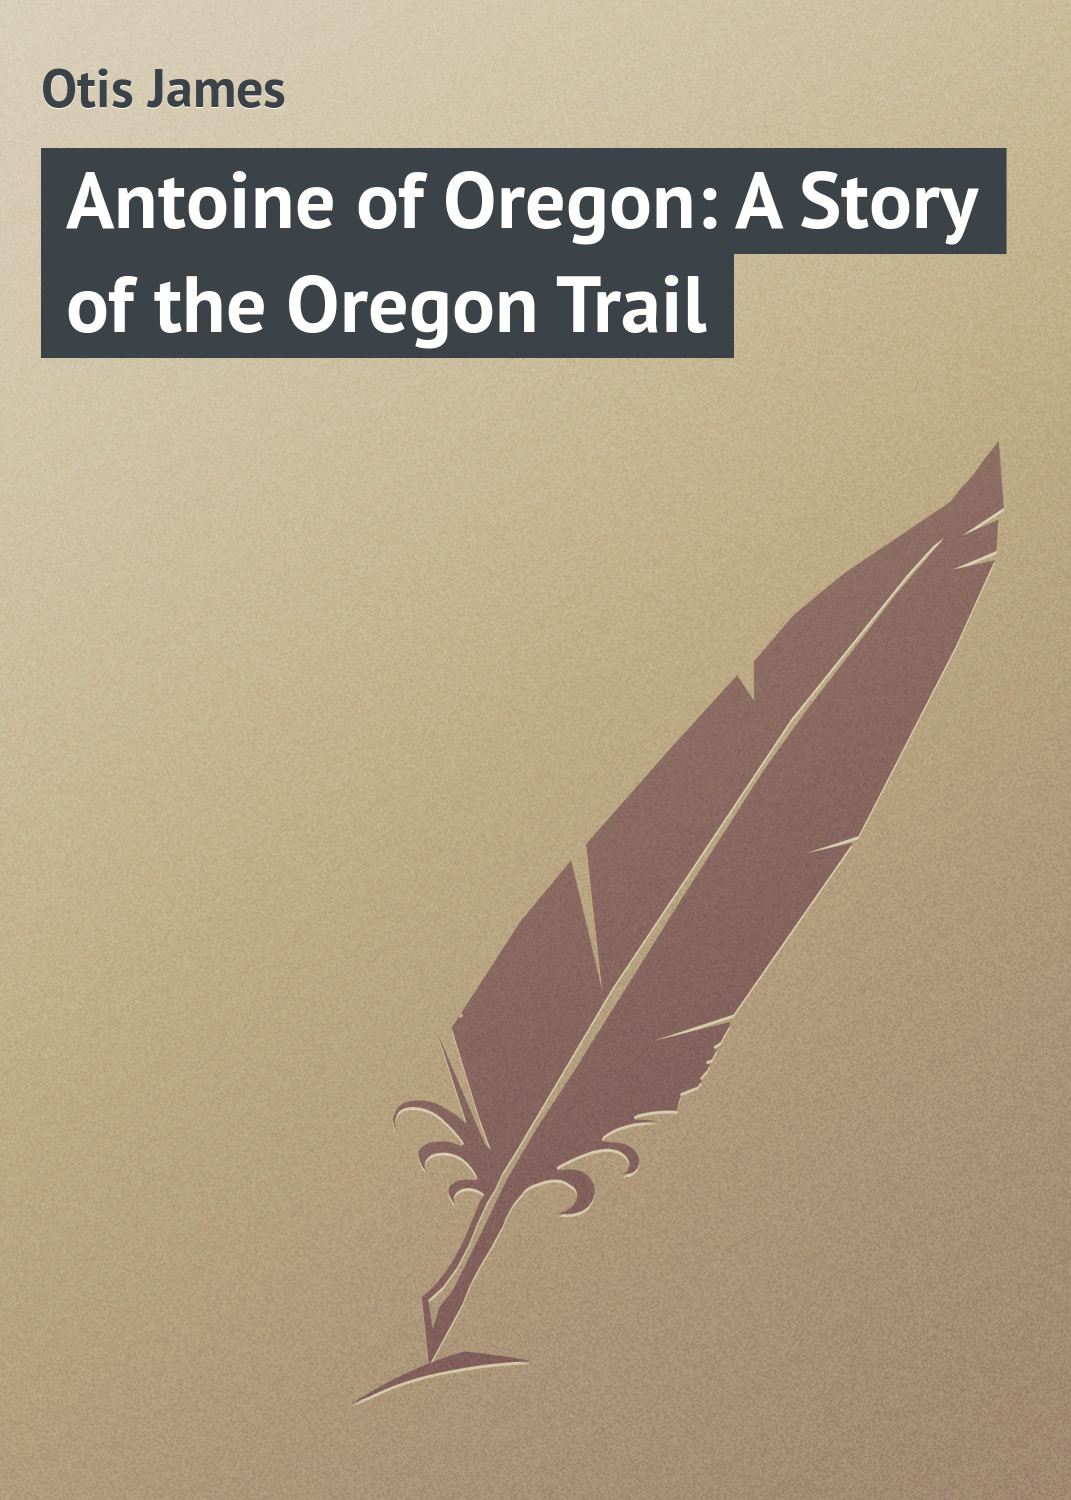 Книга Antoine of Oregon: A Story of the Oregon Trail из серии , созданная James Otis, может относится к жанру Зарубежная классика, Книги о Путешествиях. Стоимость электронной книги Antoine of Oregon: A Story of the Oregon Trail с идентификатором 23147819 составляет 5.99 руб.